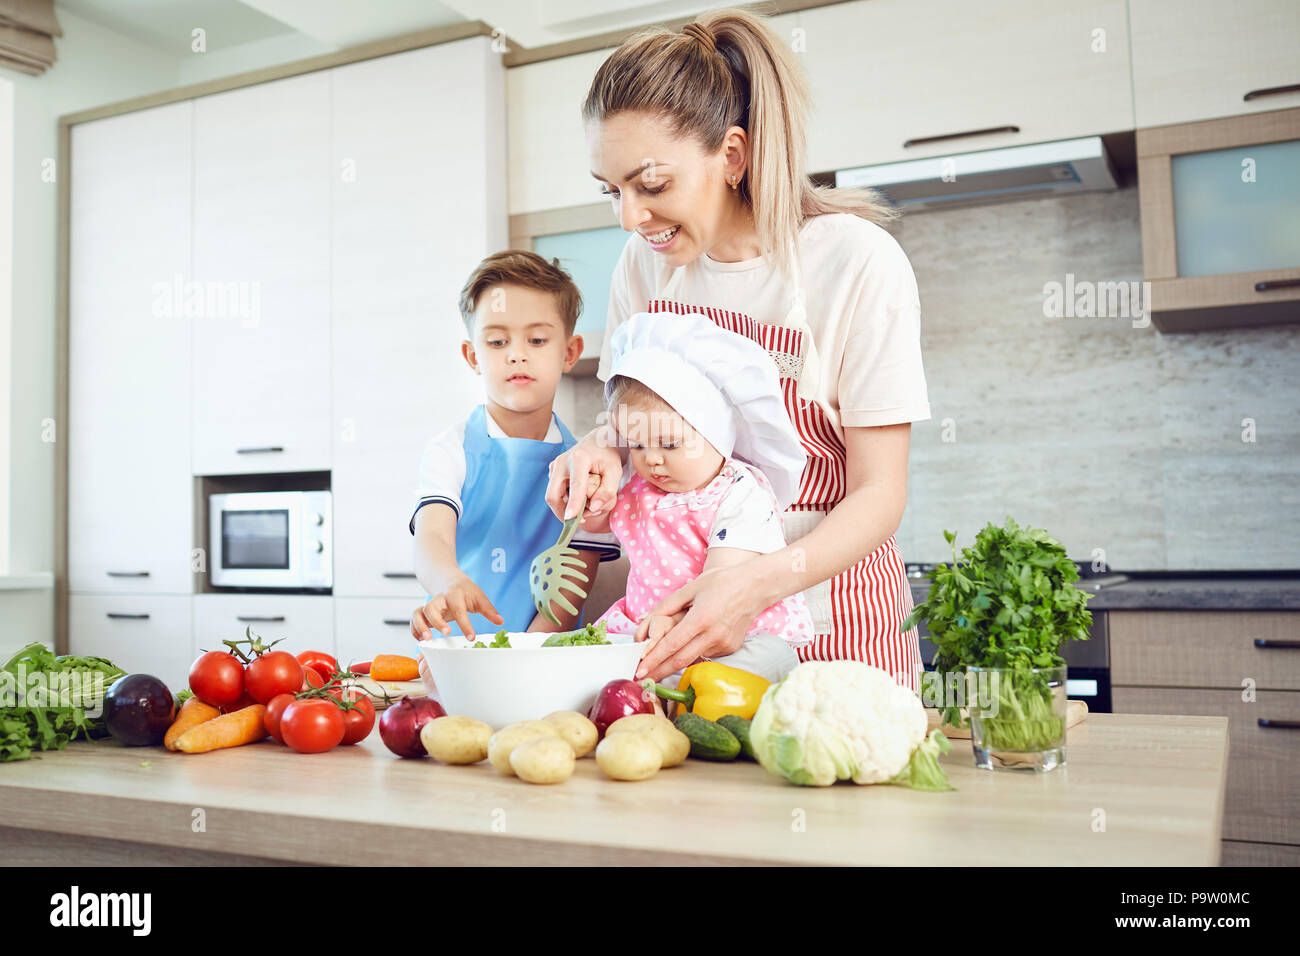 La mère et l'enfant sont la cuisson dans la cuisine Banque D'Images